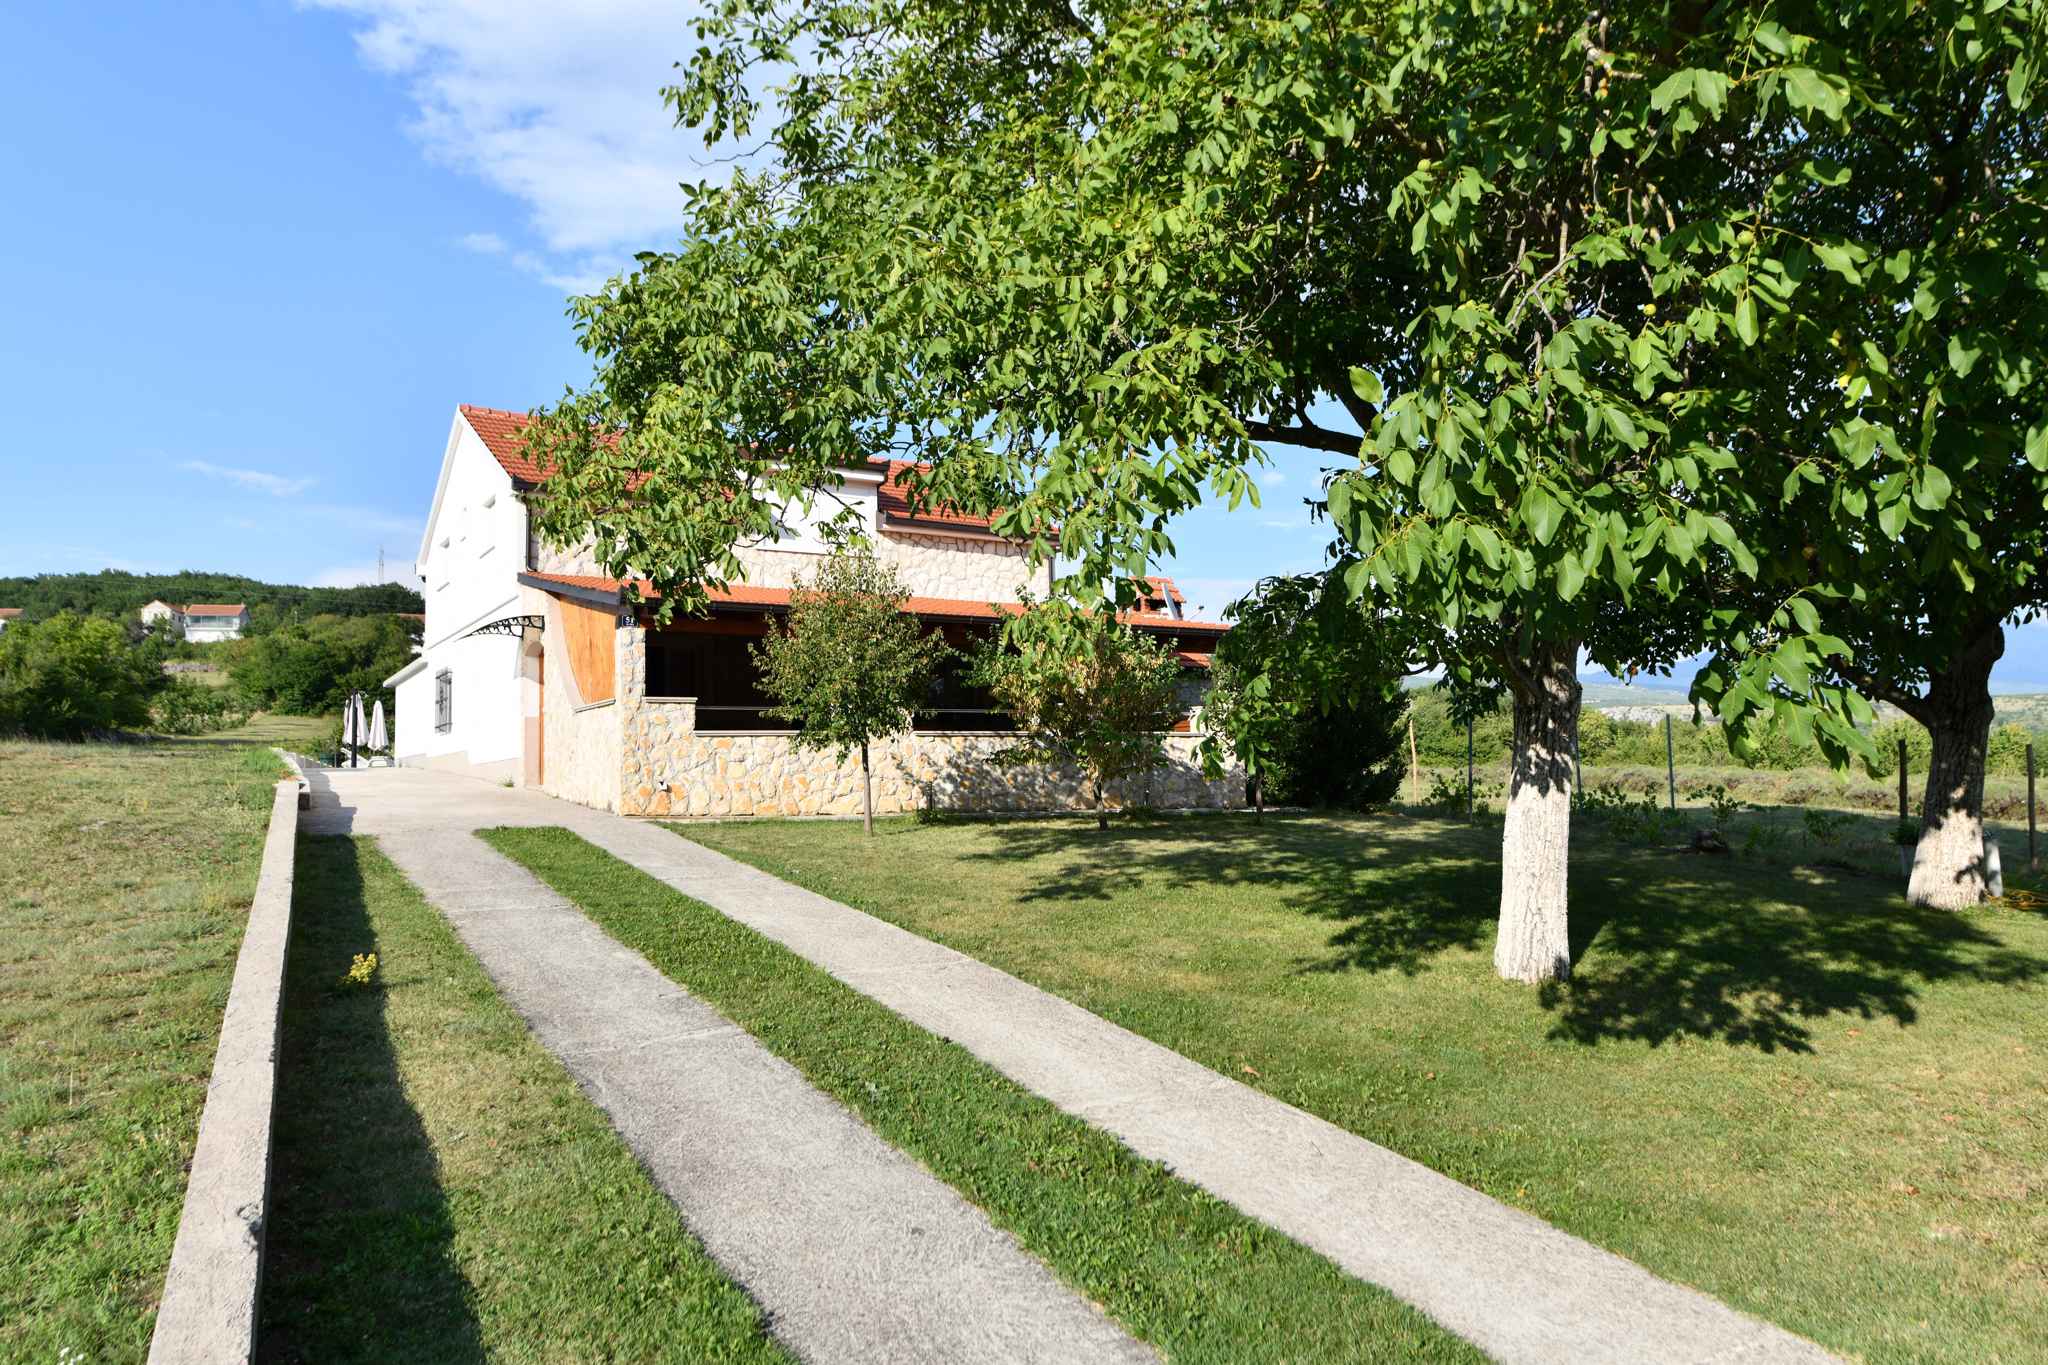 Villa mit Pool und Grillterrasse Ferienhaus in Kroatien